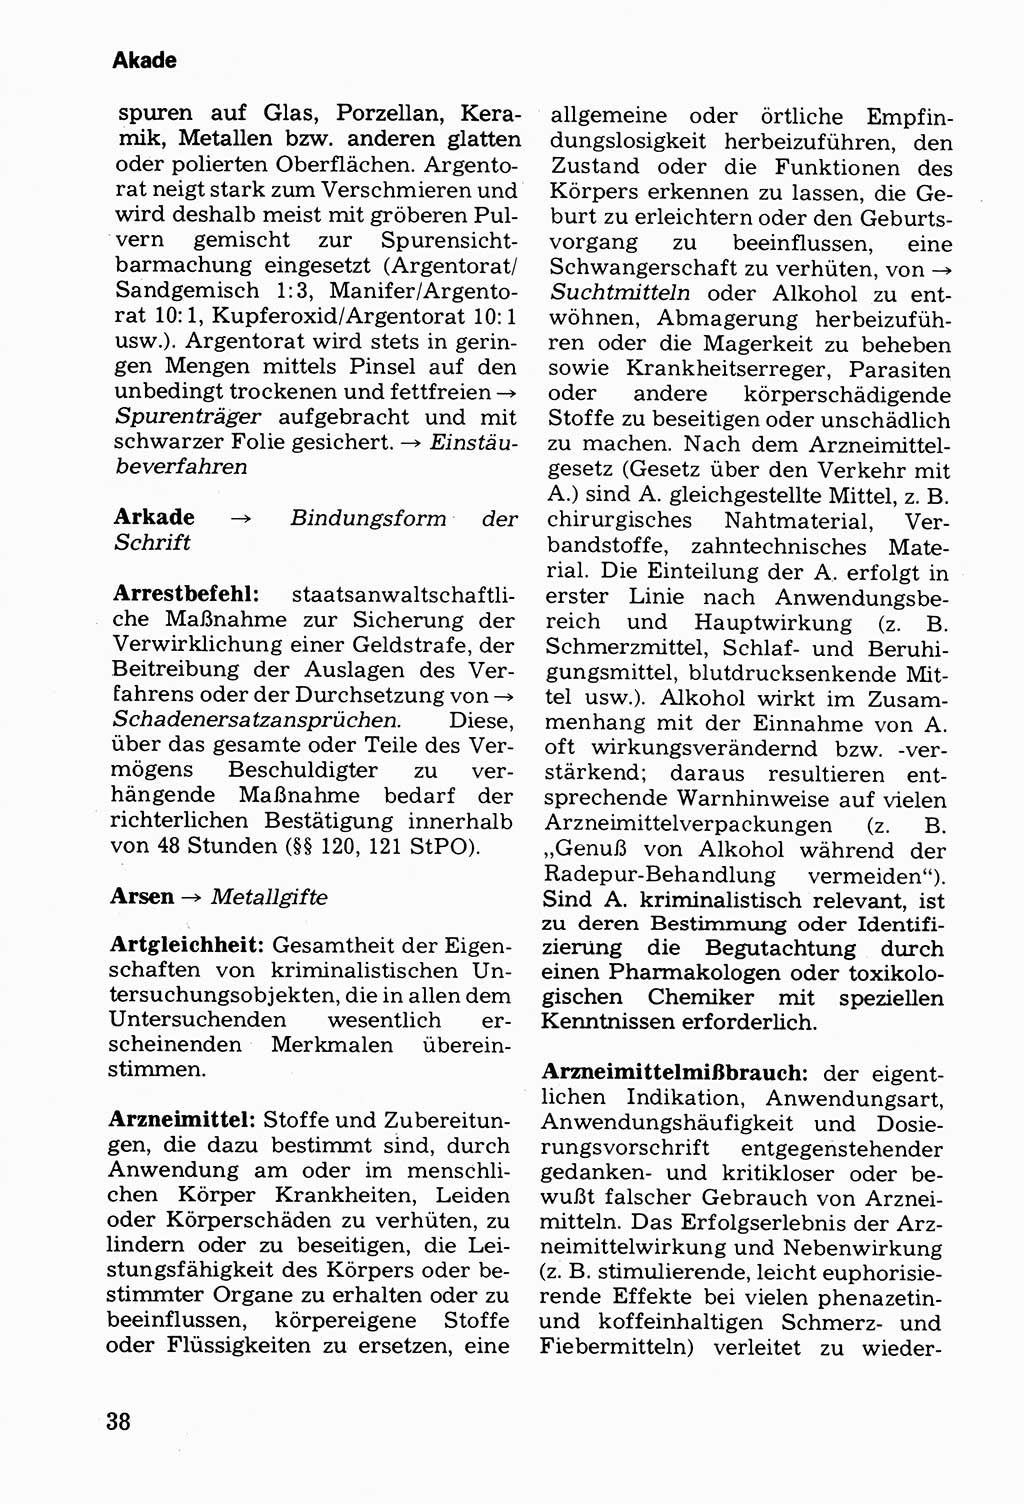 Wörterbuch der sozialistischen Kriminalistik [Deutsche Demokratische Republik (DDR)] 1981, Seite 38 (Wb. soz. Krim. DDR 1981, S. 38)